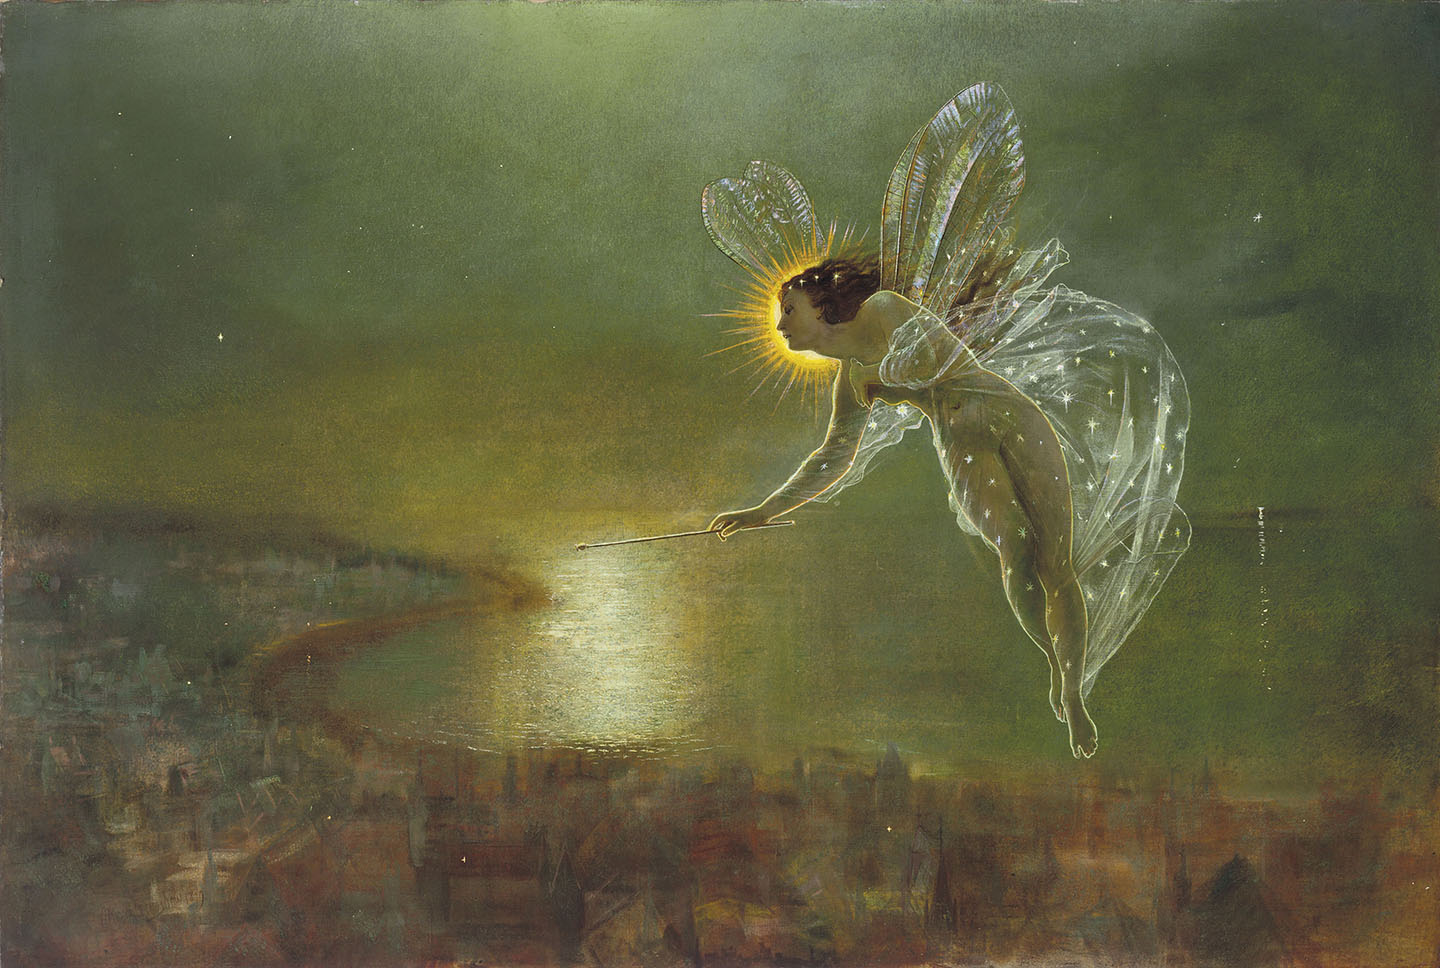 Tác phẩm “Spirit of Night” (Linh hồn của màn đêm) của họa sĩ John Atkinson Grimshaw, năm 1879. Tranh sơn dầu trên vải canvas; kích thước: 32 1/2 inch x 48 inch. Bộ sưu tập tư nhân. (Ảnh: Tài liệu công cộng)